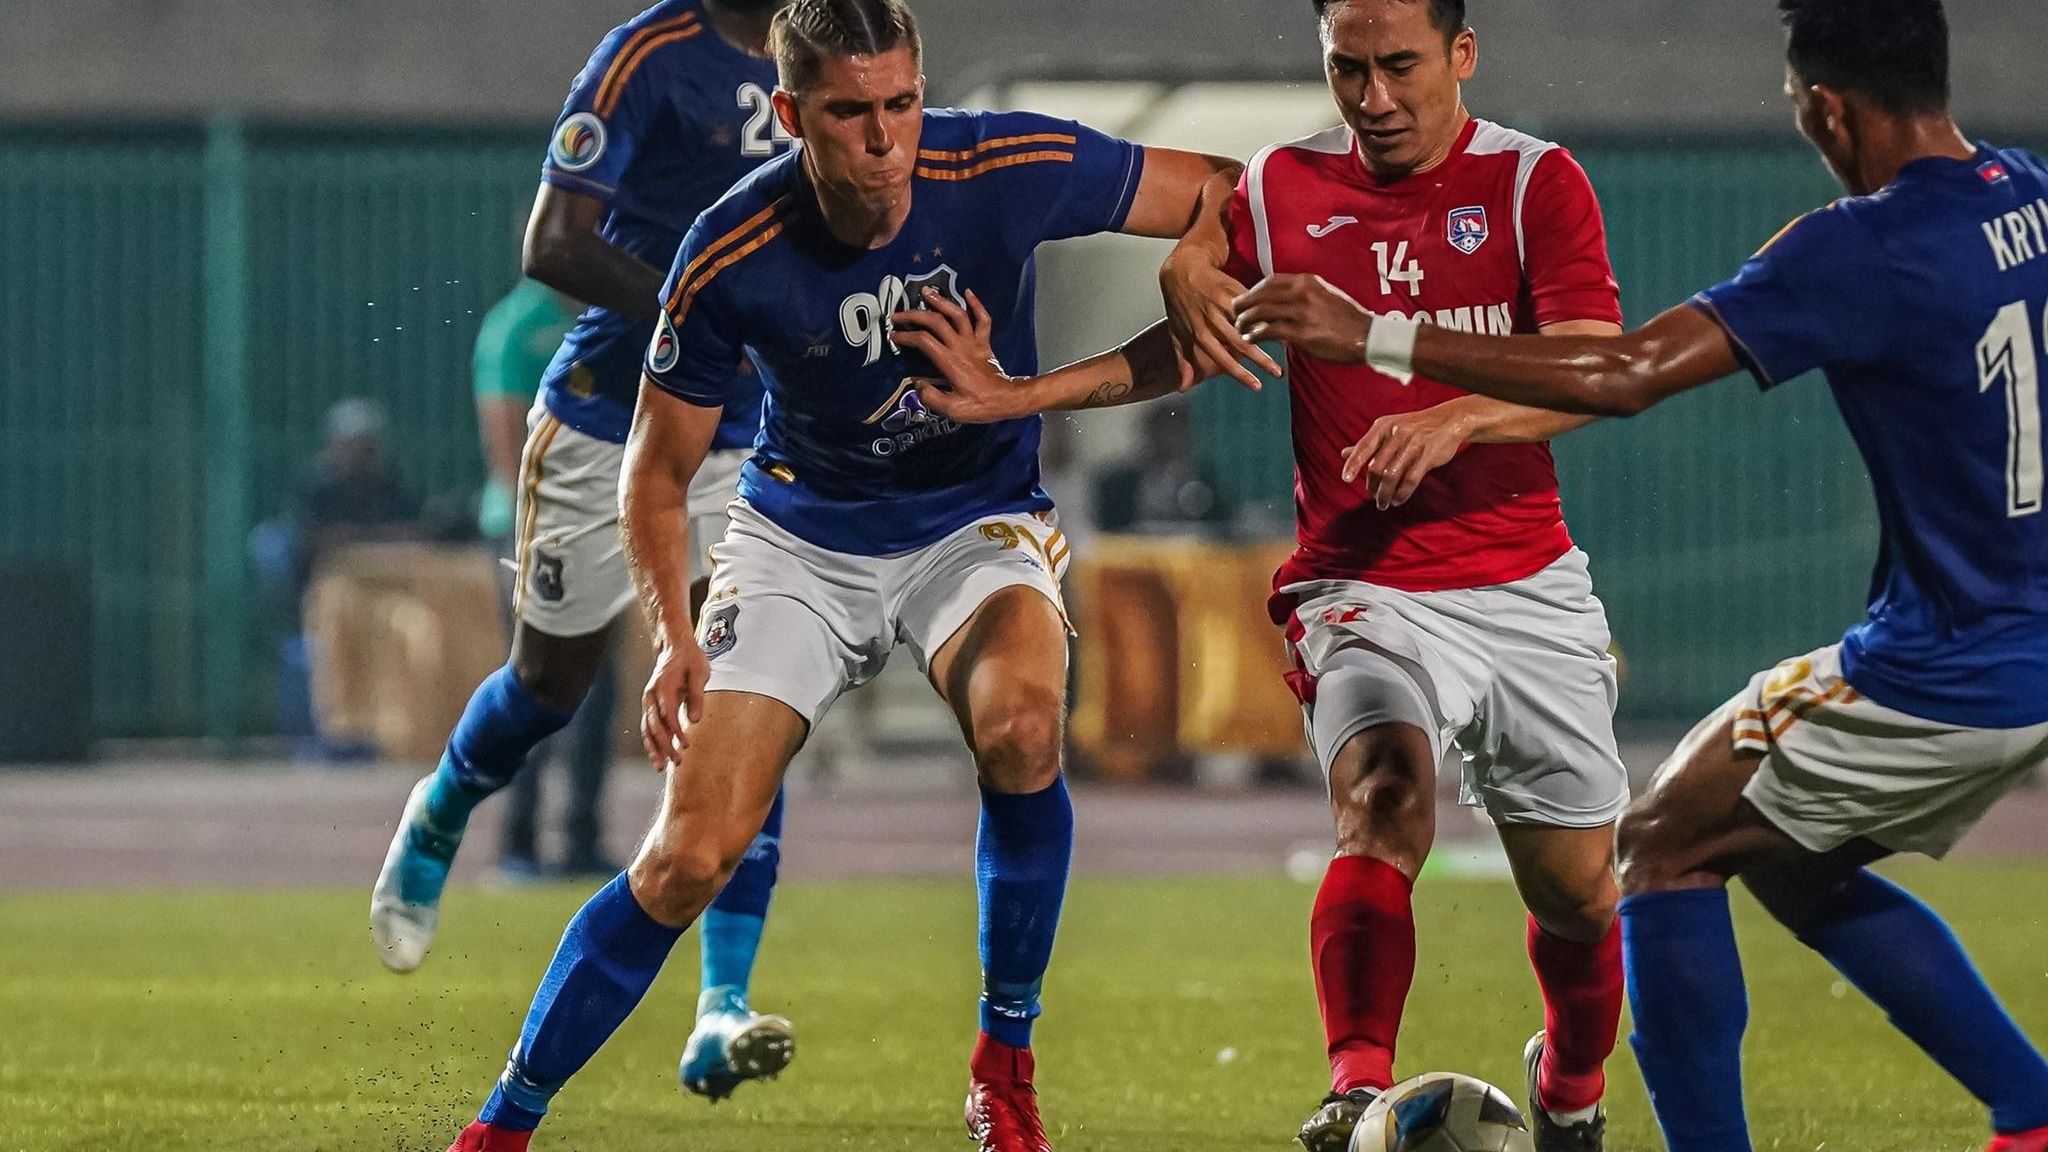 Jonny Campbell vs Nguyen Hai Huy | Svay Rieng vs Than Quang Ninh | AFC Cup 2020